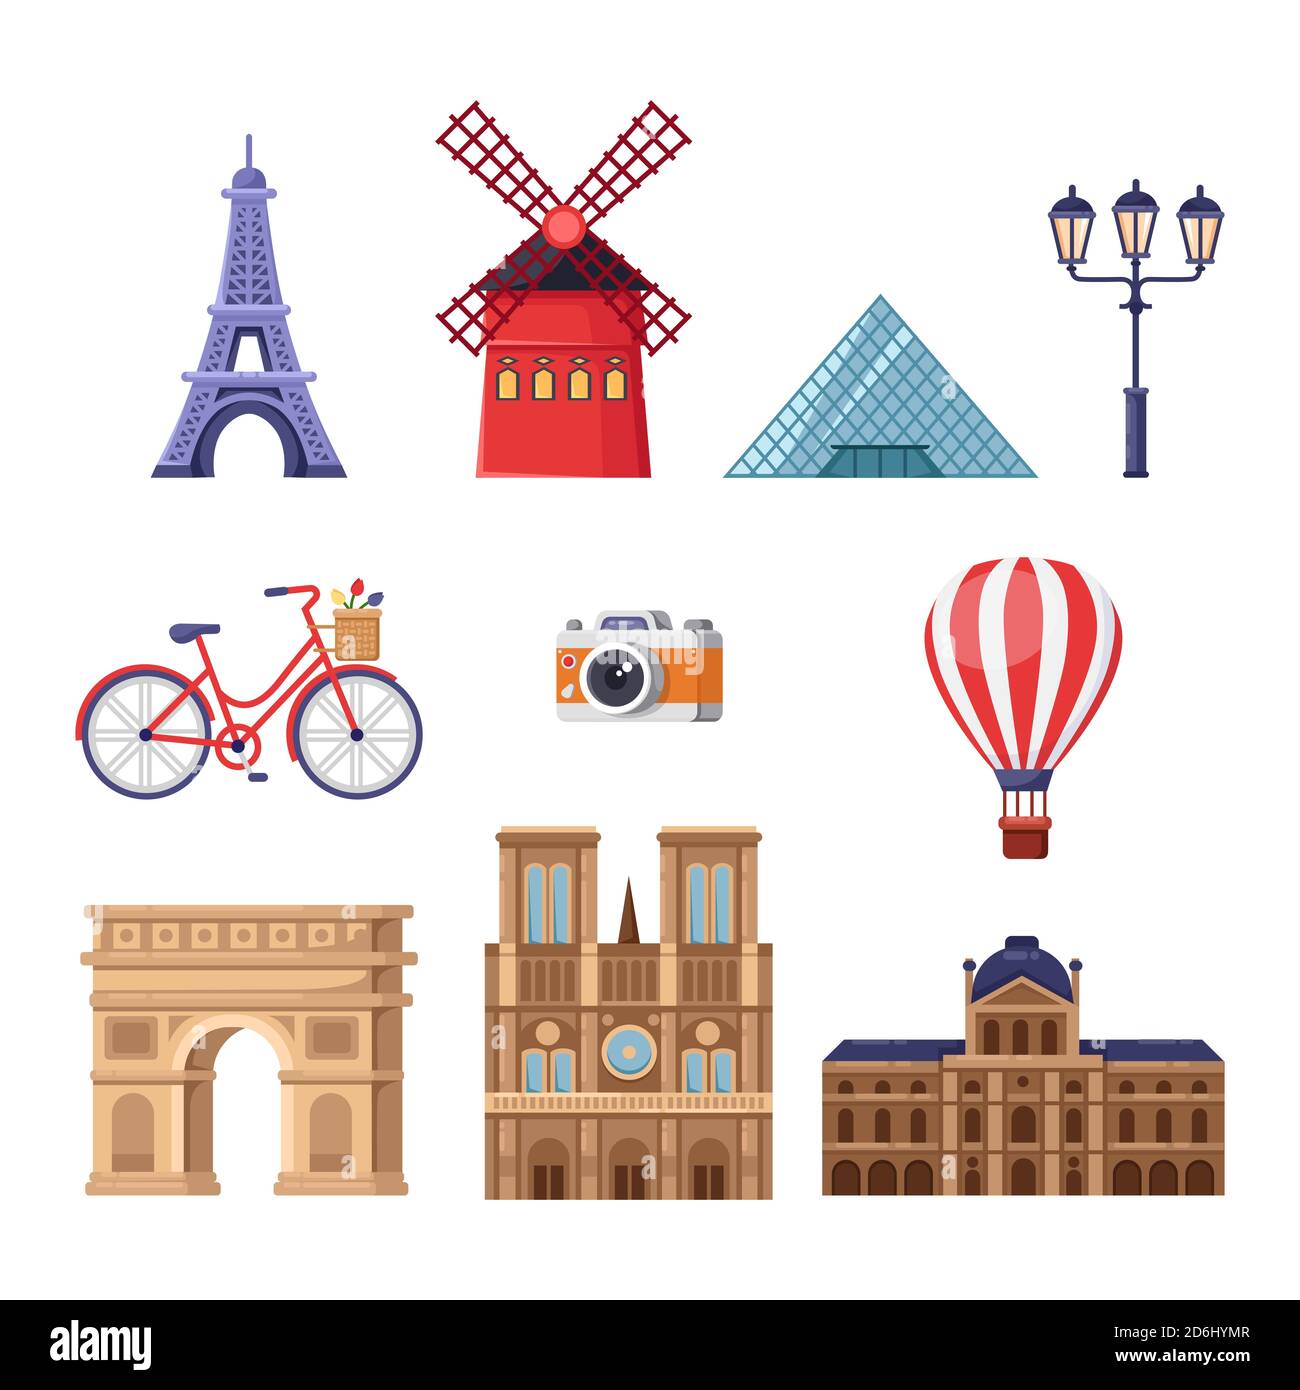 Reisen Sie nach France Design Elements. Paris Sehenswürdigkeiten Illustration. Vektor Cartoon isolierte Symbole gesetzt. Eiffelturm, Louvre, Triumphbogen, Notre Stock Vektor